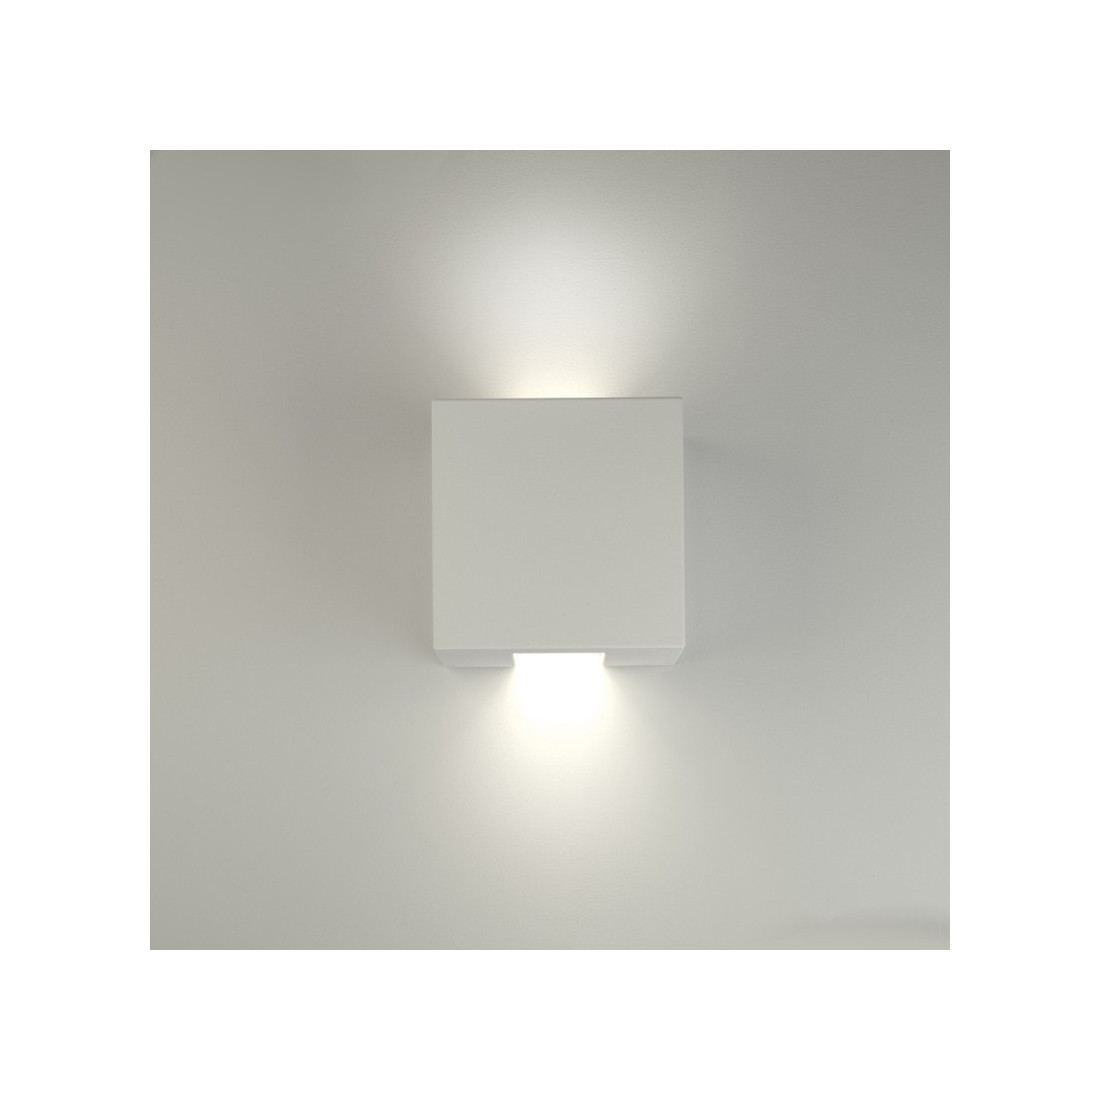 Applique BF-CONTE 2336 G9 LED gesso bianco biemissione lampada parete cubo interno IP20